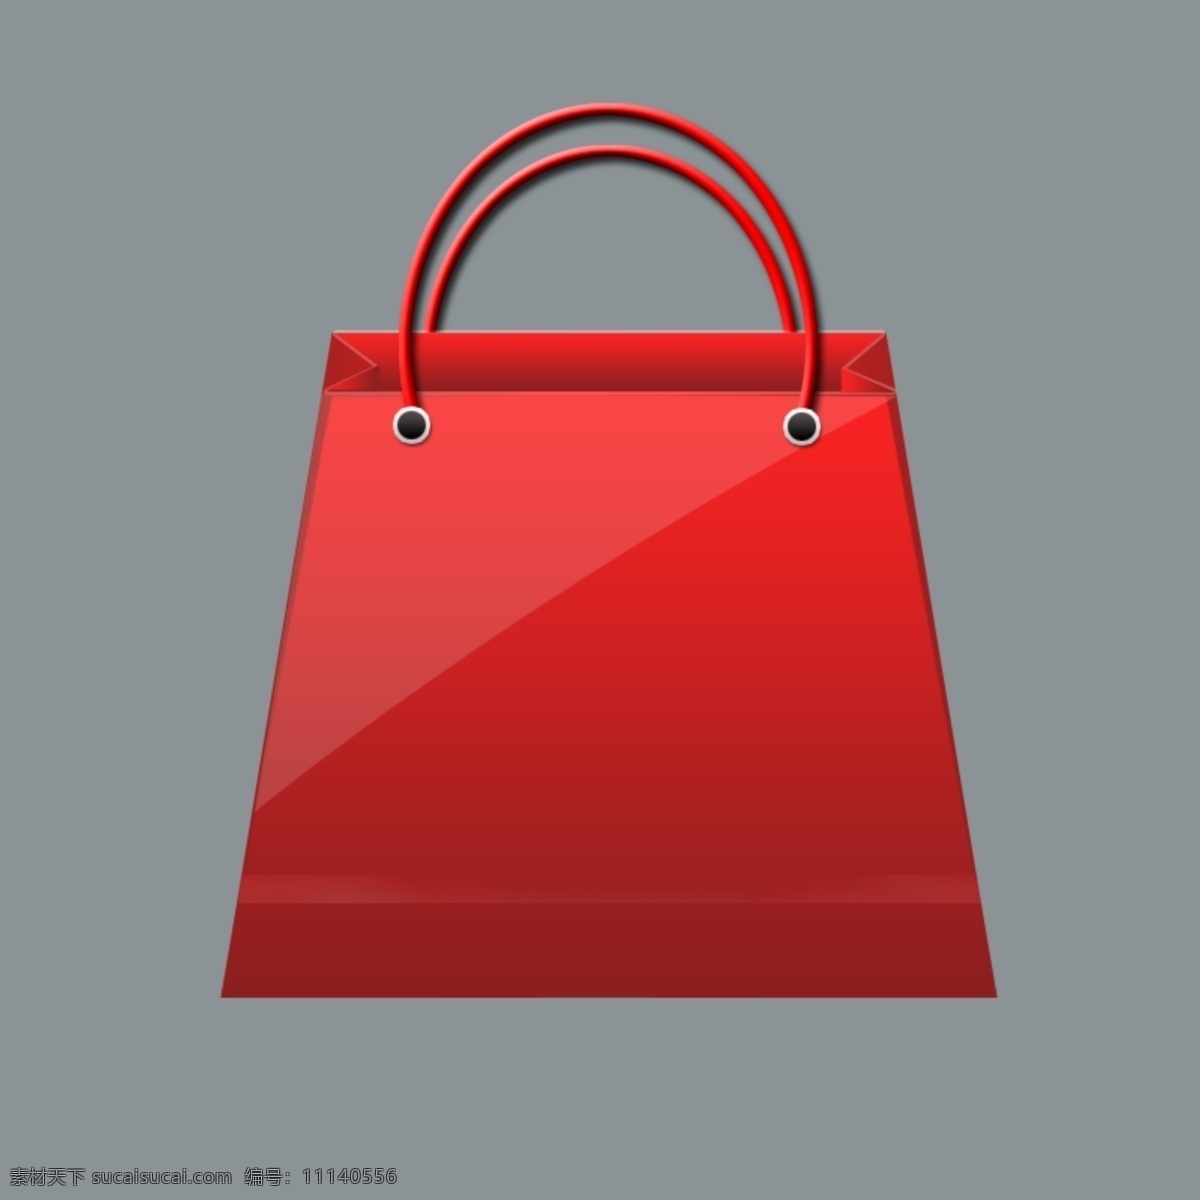 红色手提袋 手提袋 包装袋 包装盒 高档 华丽 时尚 艺术 原创设计 原创包装设计